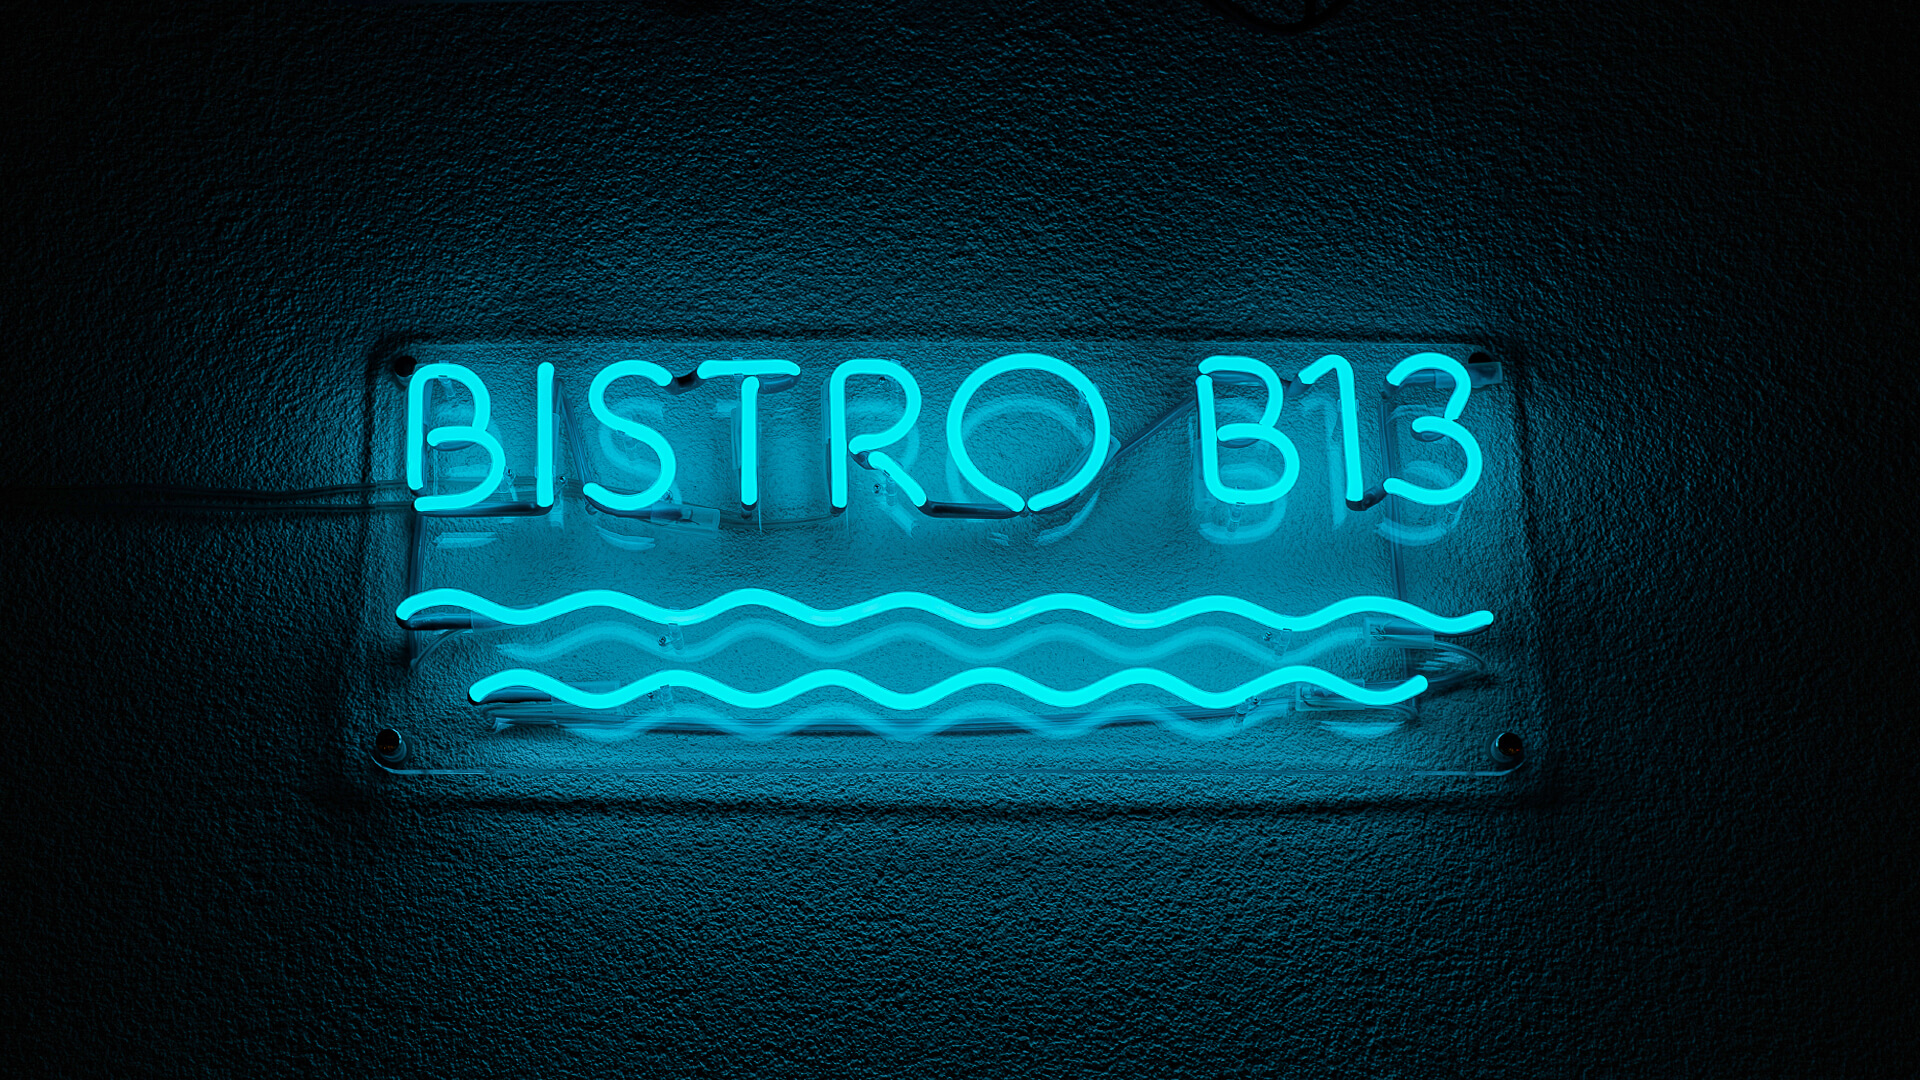 Bistro B13 - Insegna Bistrot al neon blu, con onde sotto la scritta.